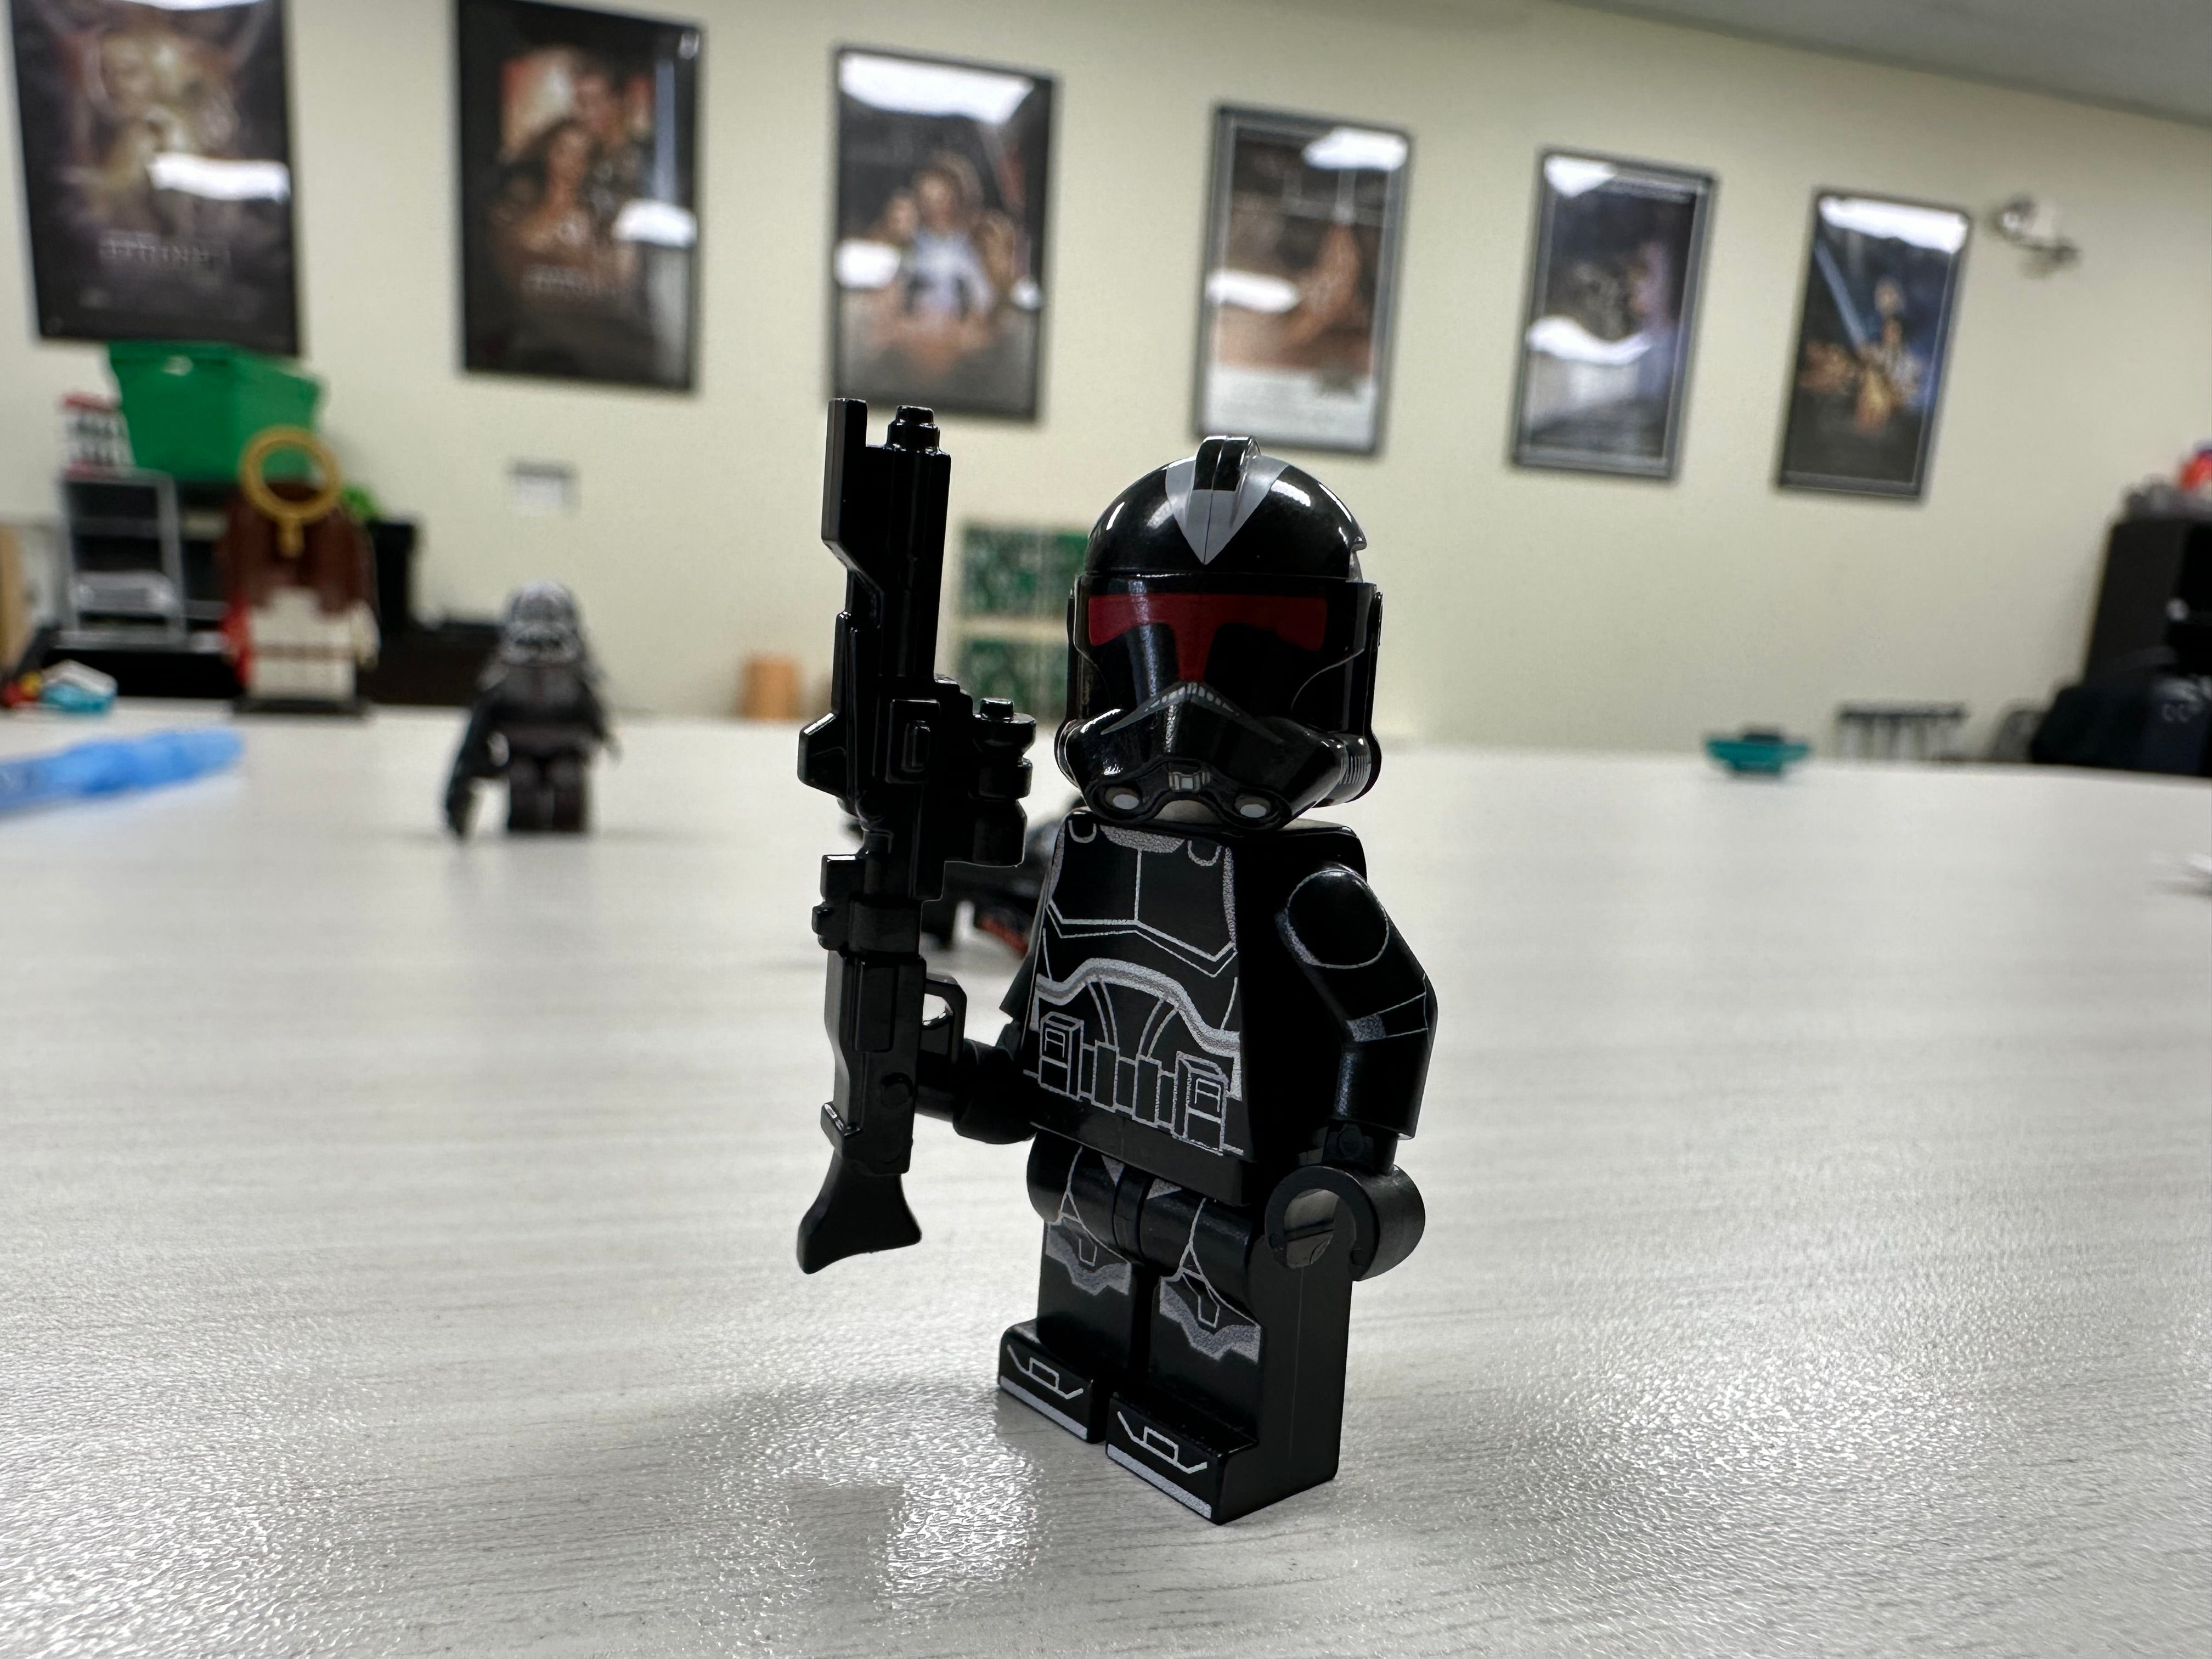 Shadow trooper v2